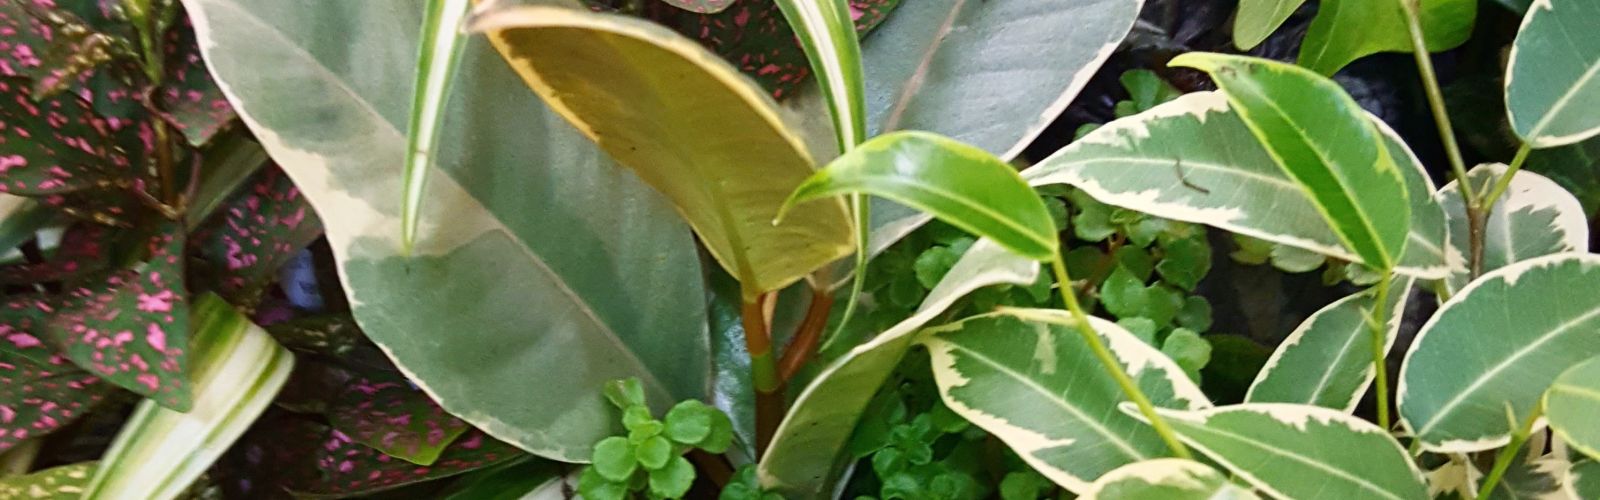 closeup of miniature green plants